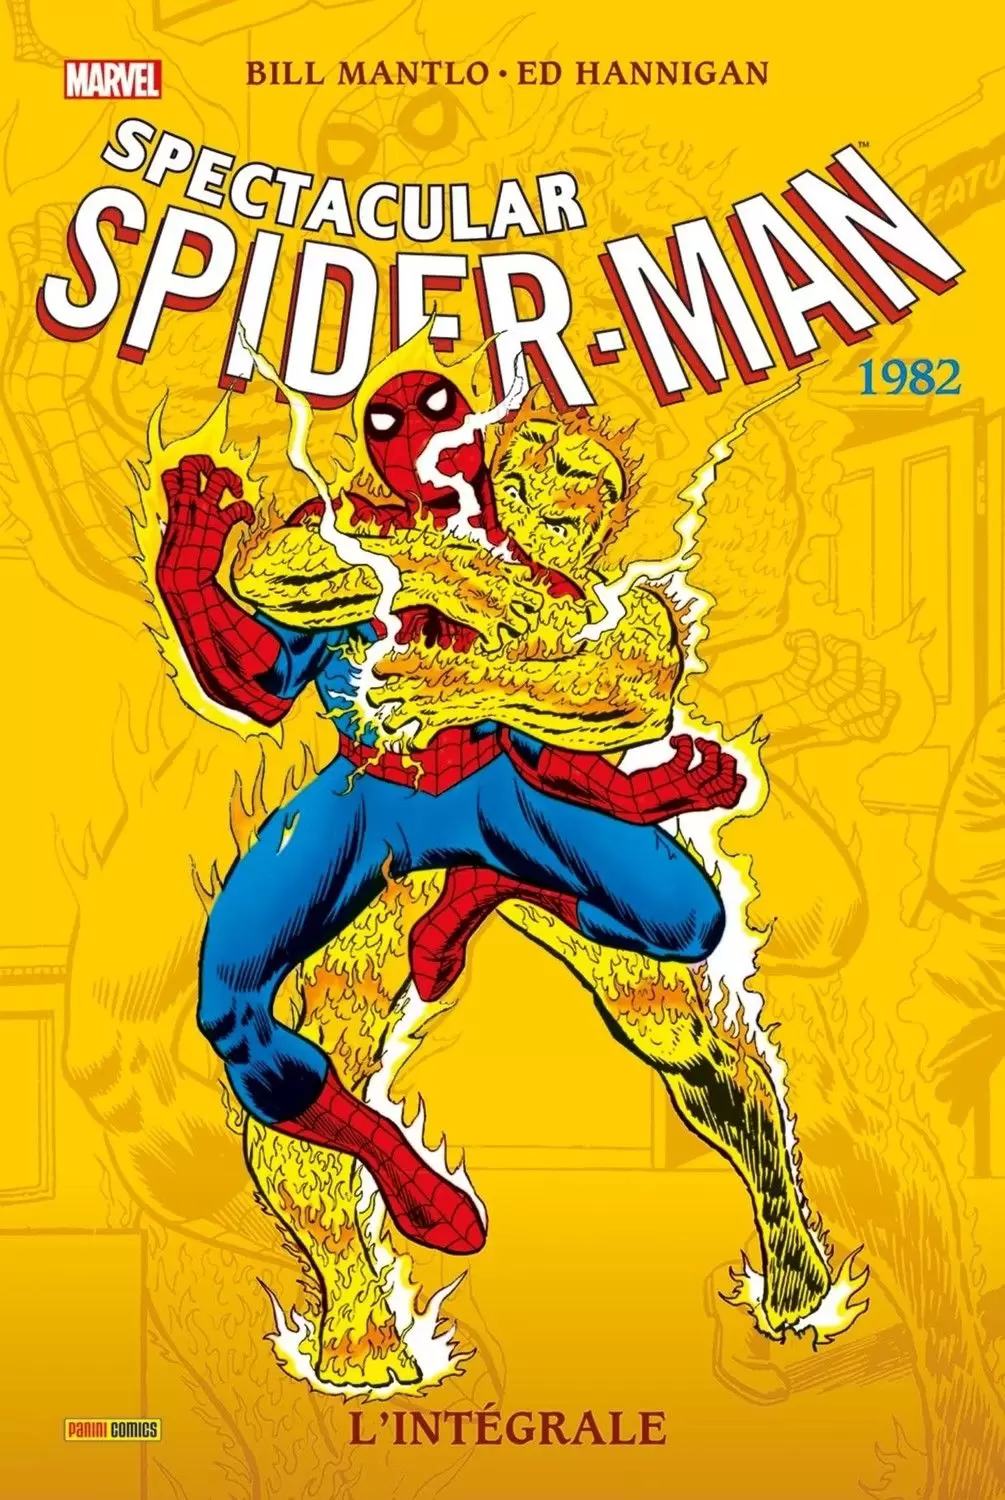 Spectacular Spider-Man - Spectacular Spider-Man 1982